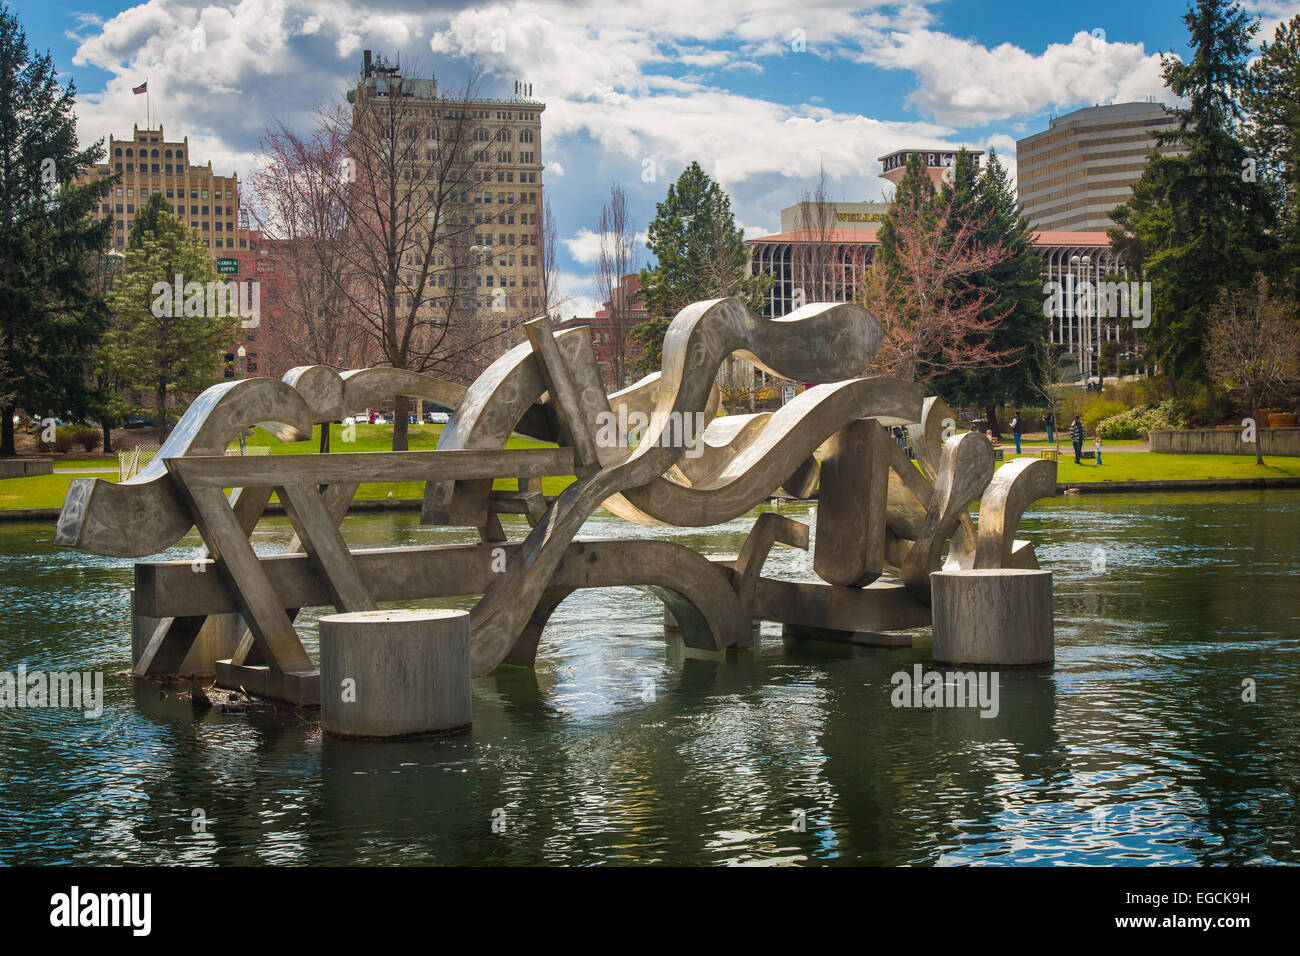 Spokane è una città situata nel nord-ovest degli Stati Uniti nello stato di Washington. Foto Stock